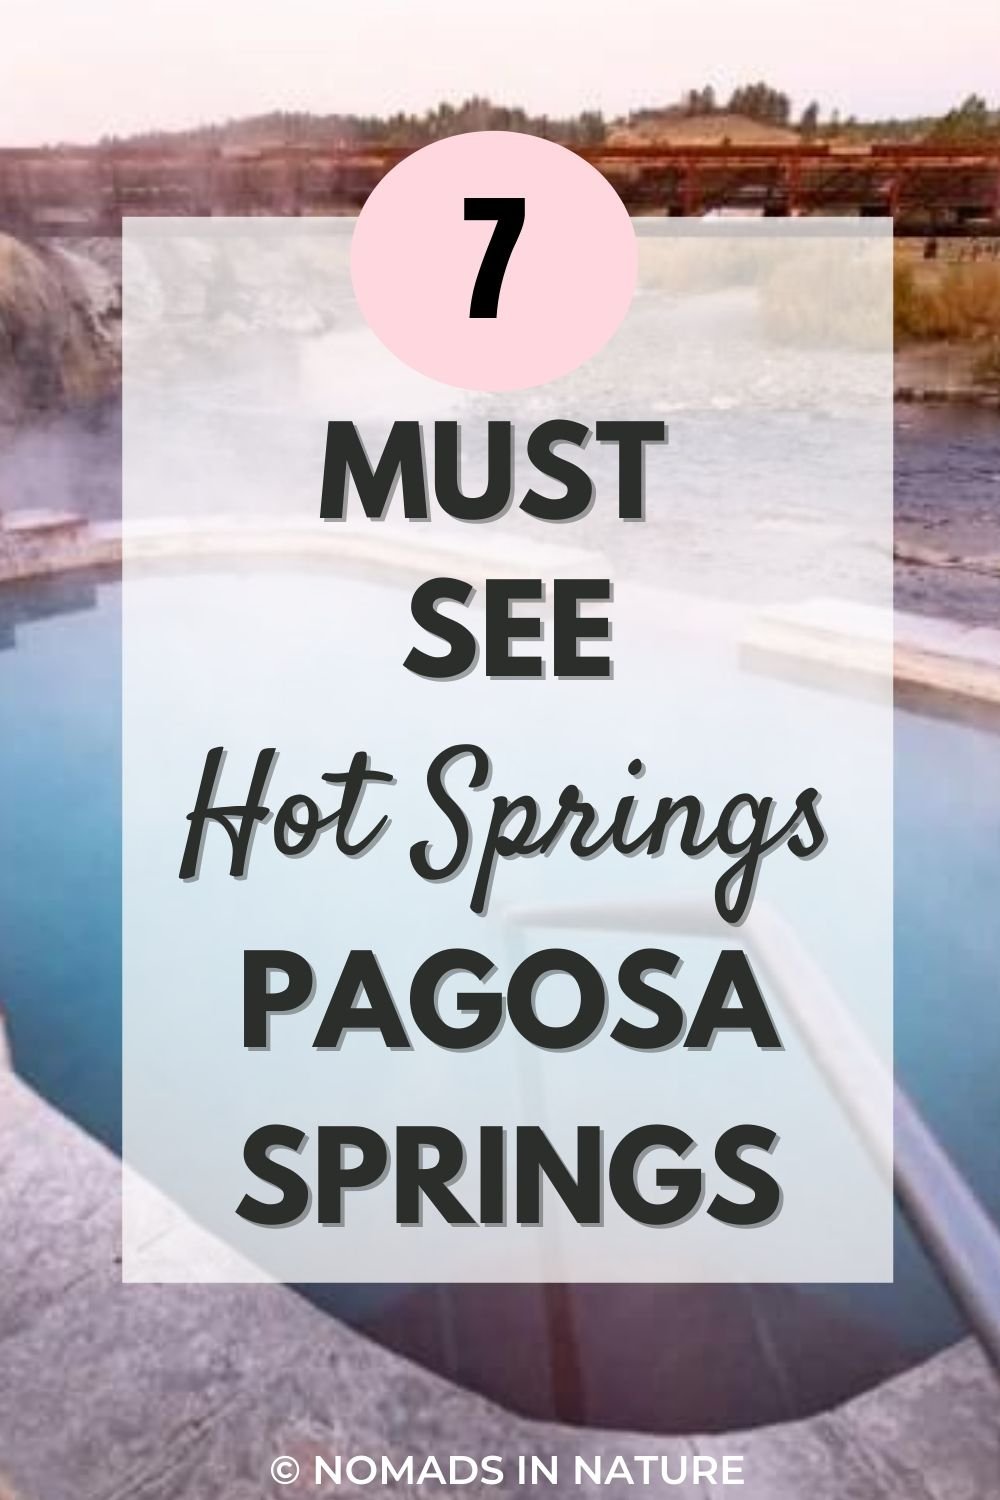 Hot Springs Pagosa Springs.jpg